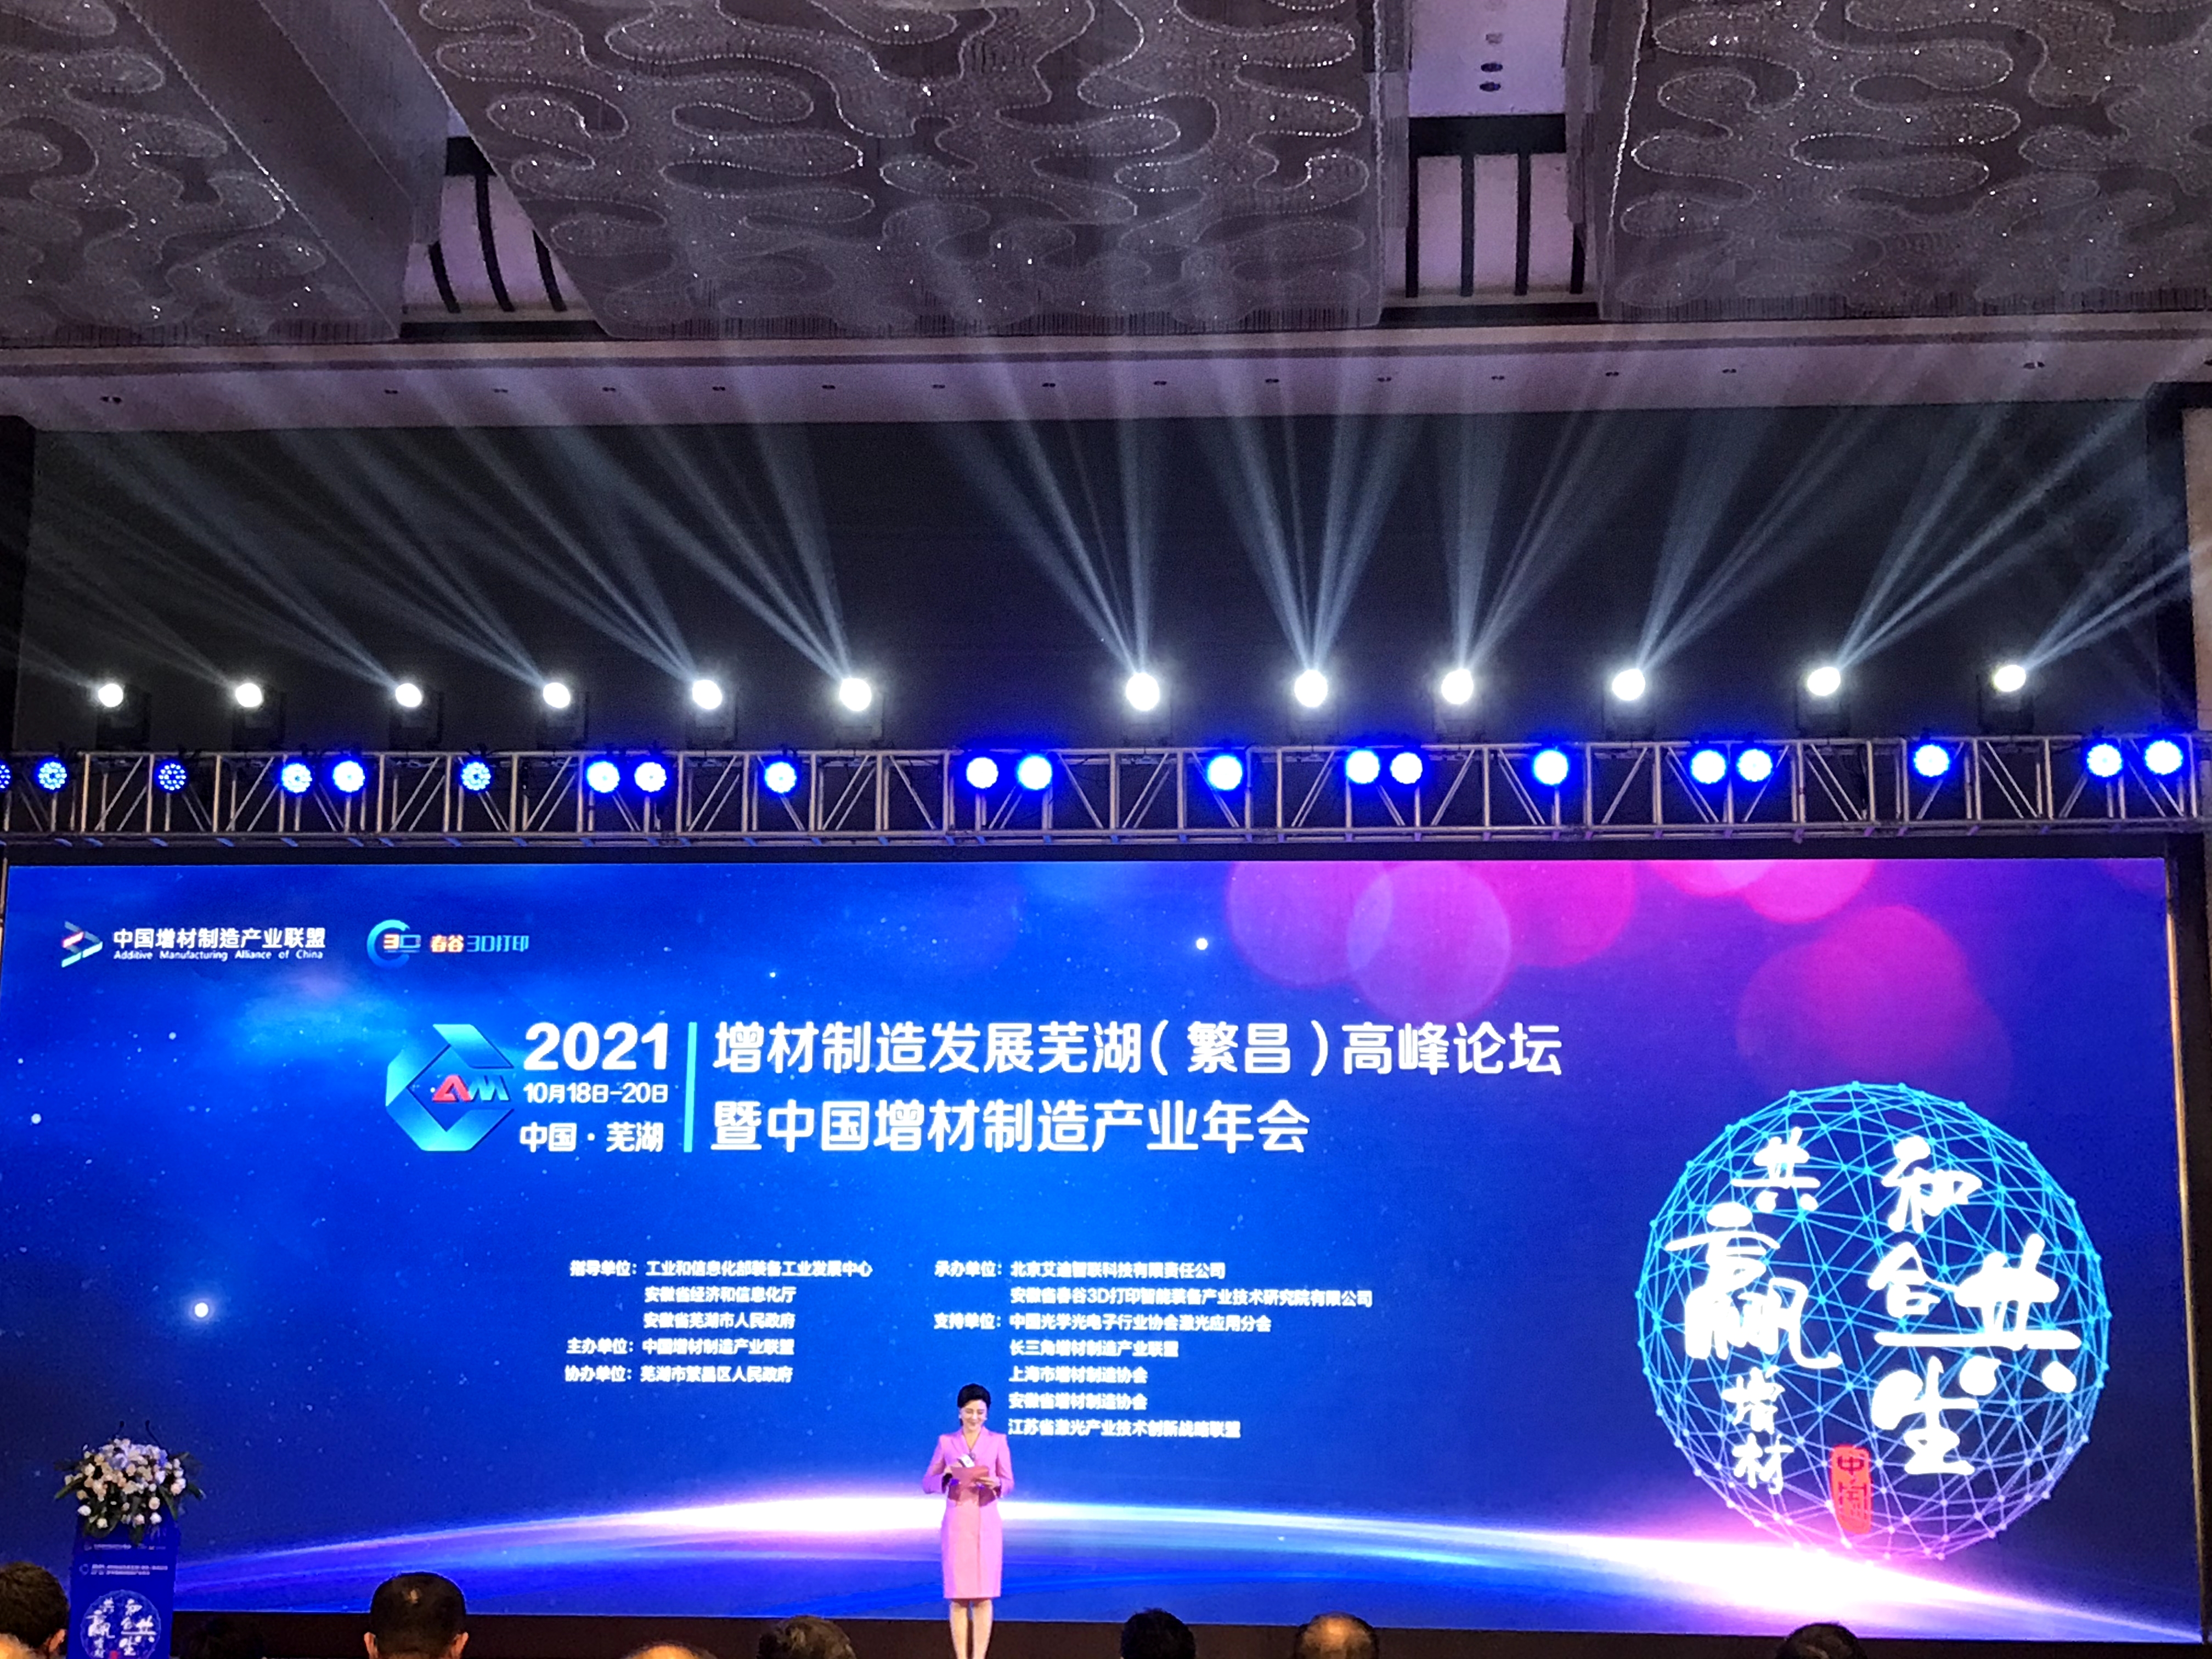 2021增材制造发展芜湖（繁昌）高峰论坛暨中国增材制造产业年会在芜湖成功召开